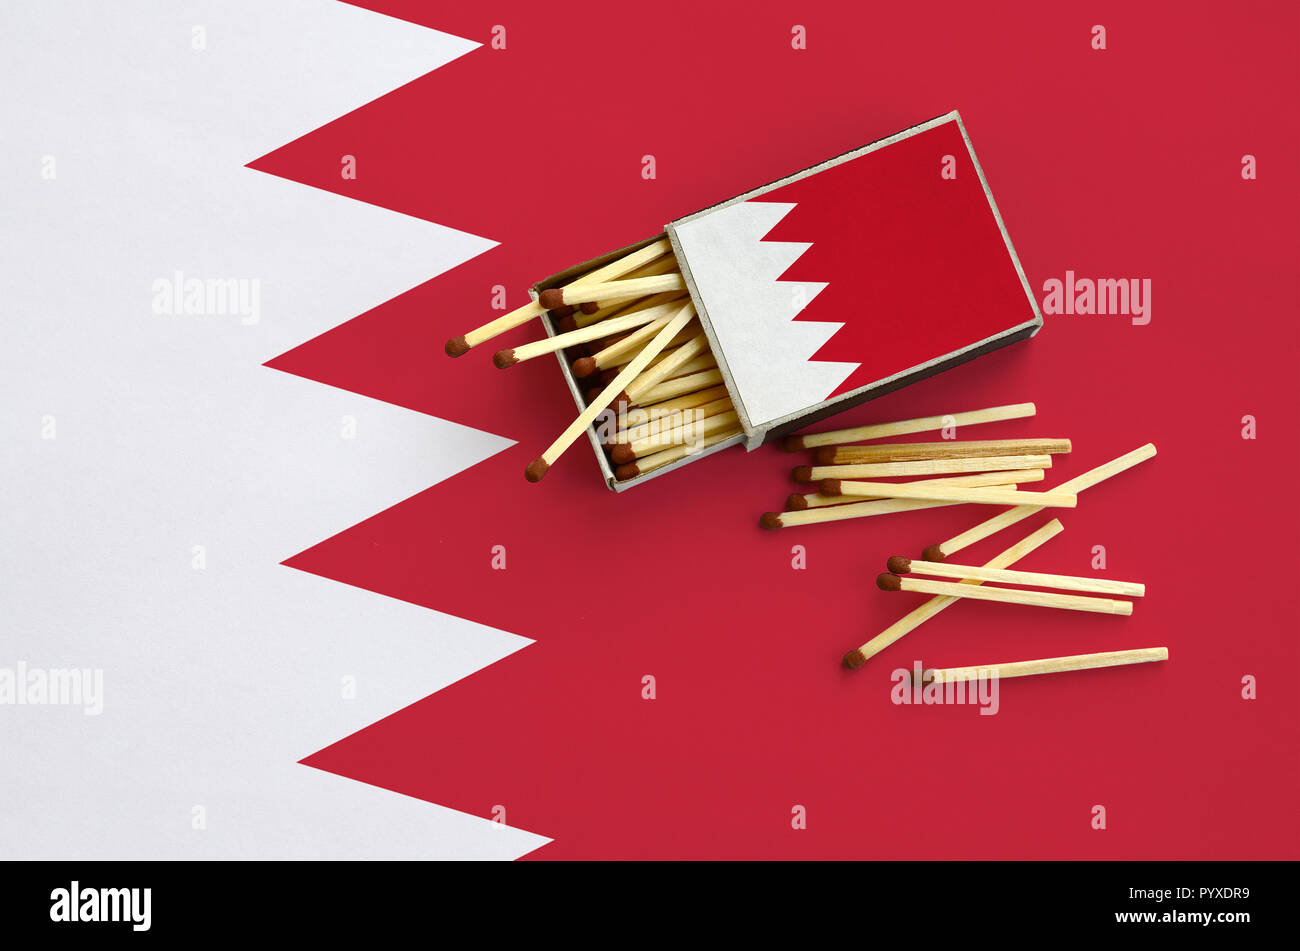 Drapeau de Bahreïn est indiqué sur une boîte d'allumettes, à partir de laquelle plusieurs matches de l'automne et se trouve sur un grand drapeau. Banque D'Images